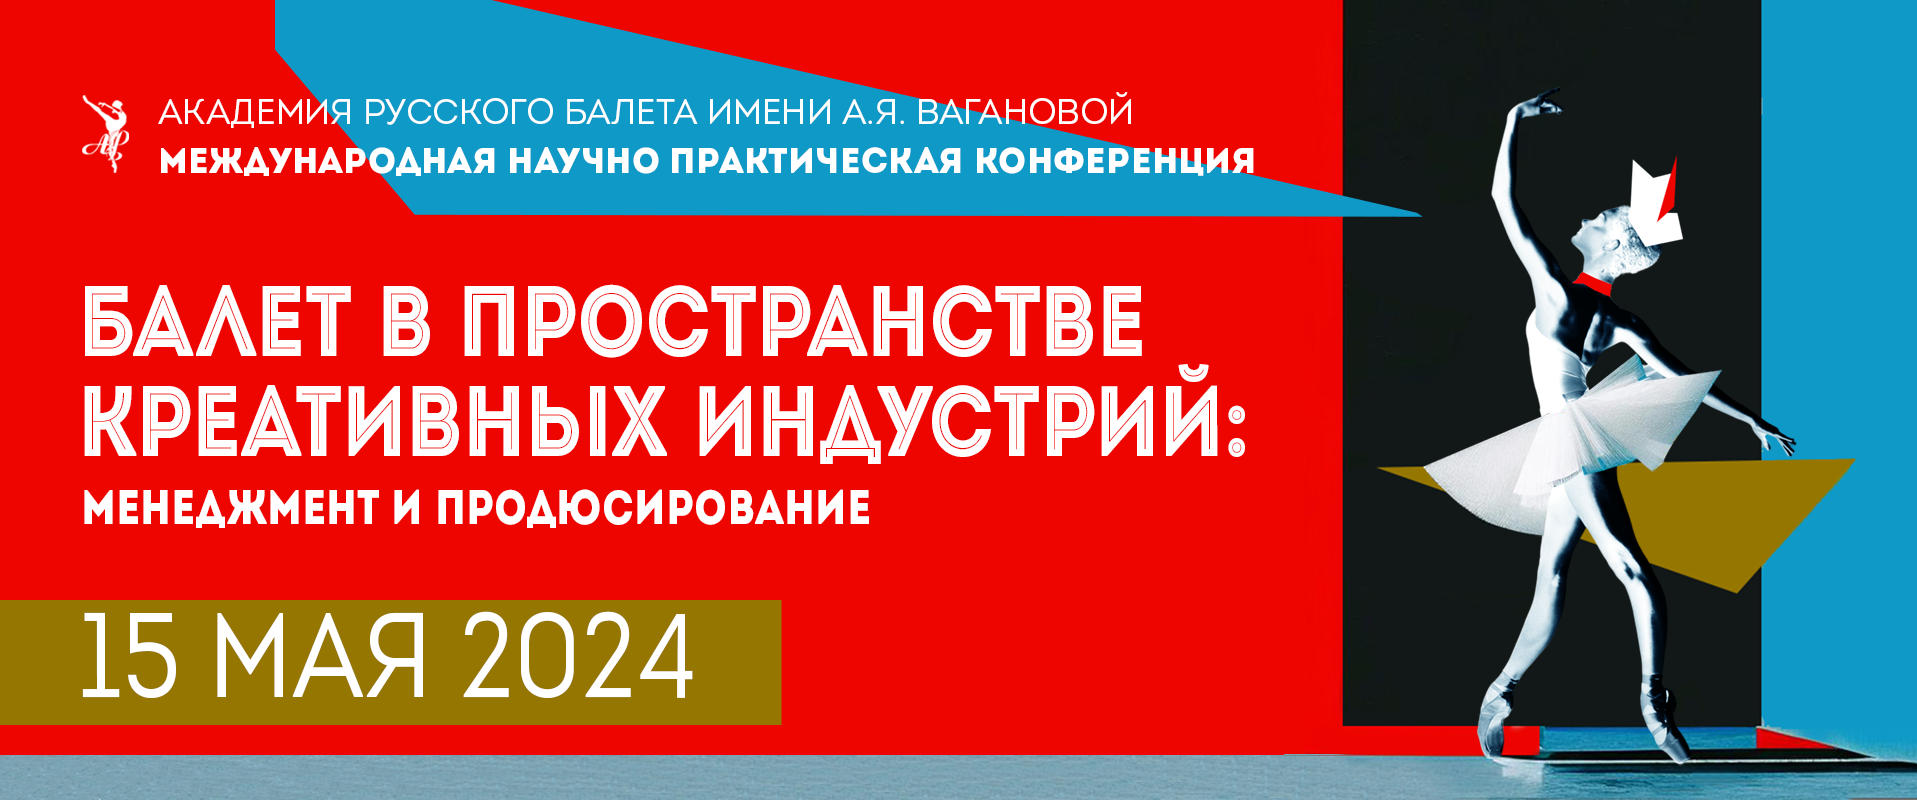 Академия Вагановой конференция 2024